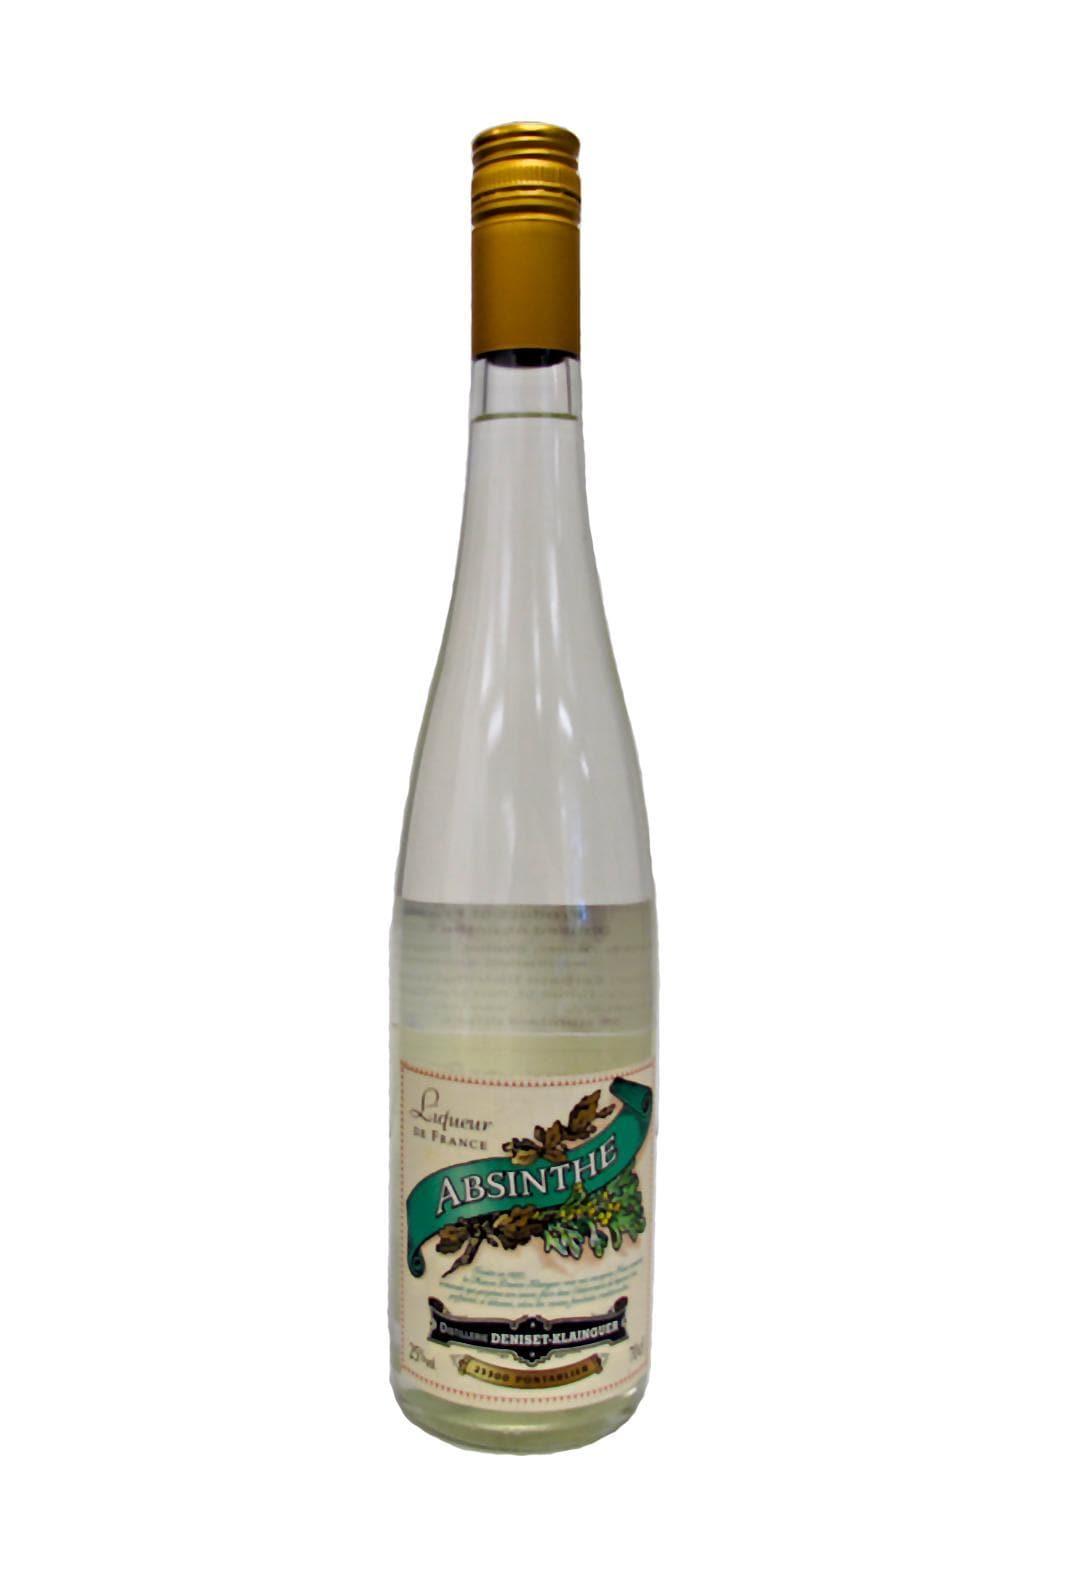 Distillerie Pernot Liqueur d'Absinthe 25% 700ml | Liqueurs | Shop online at Spirits of France